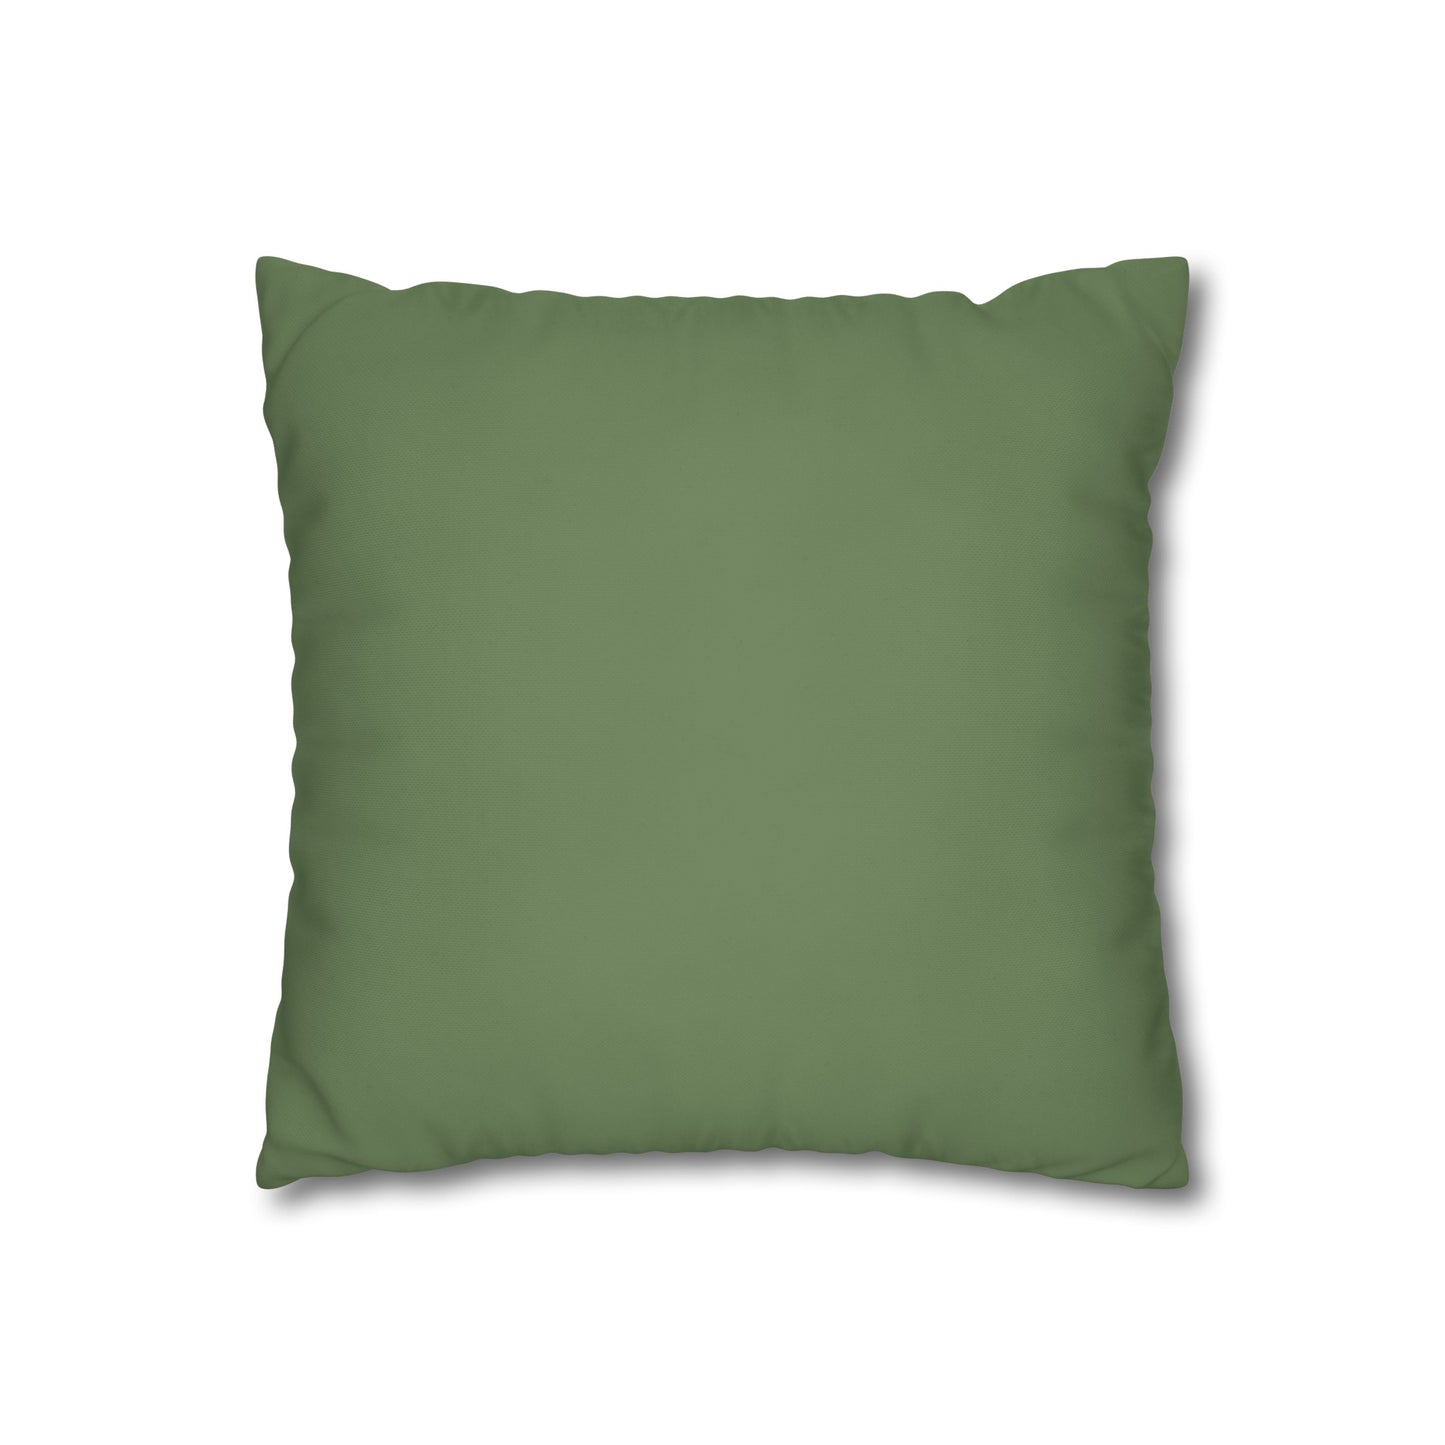 Tropical Adventure - Green Cushion Cover